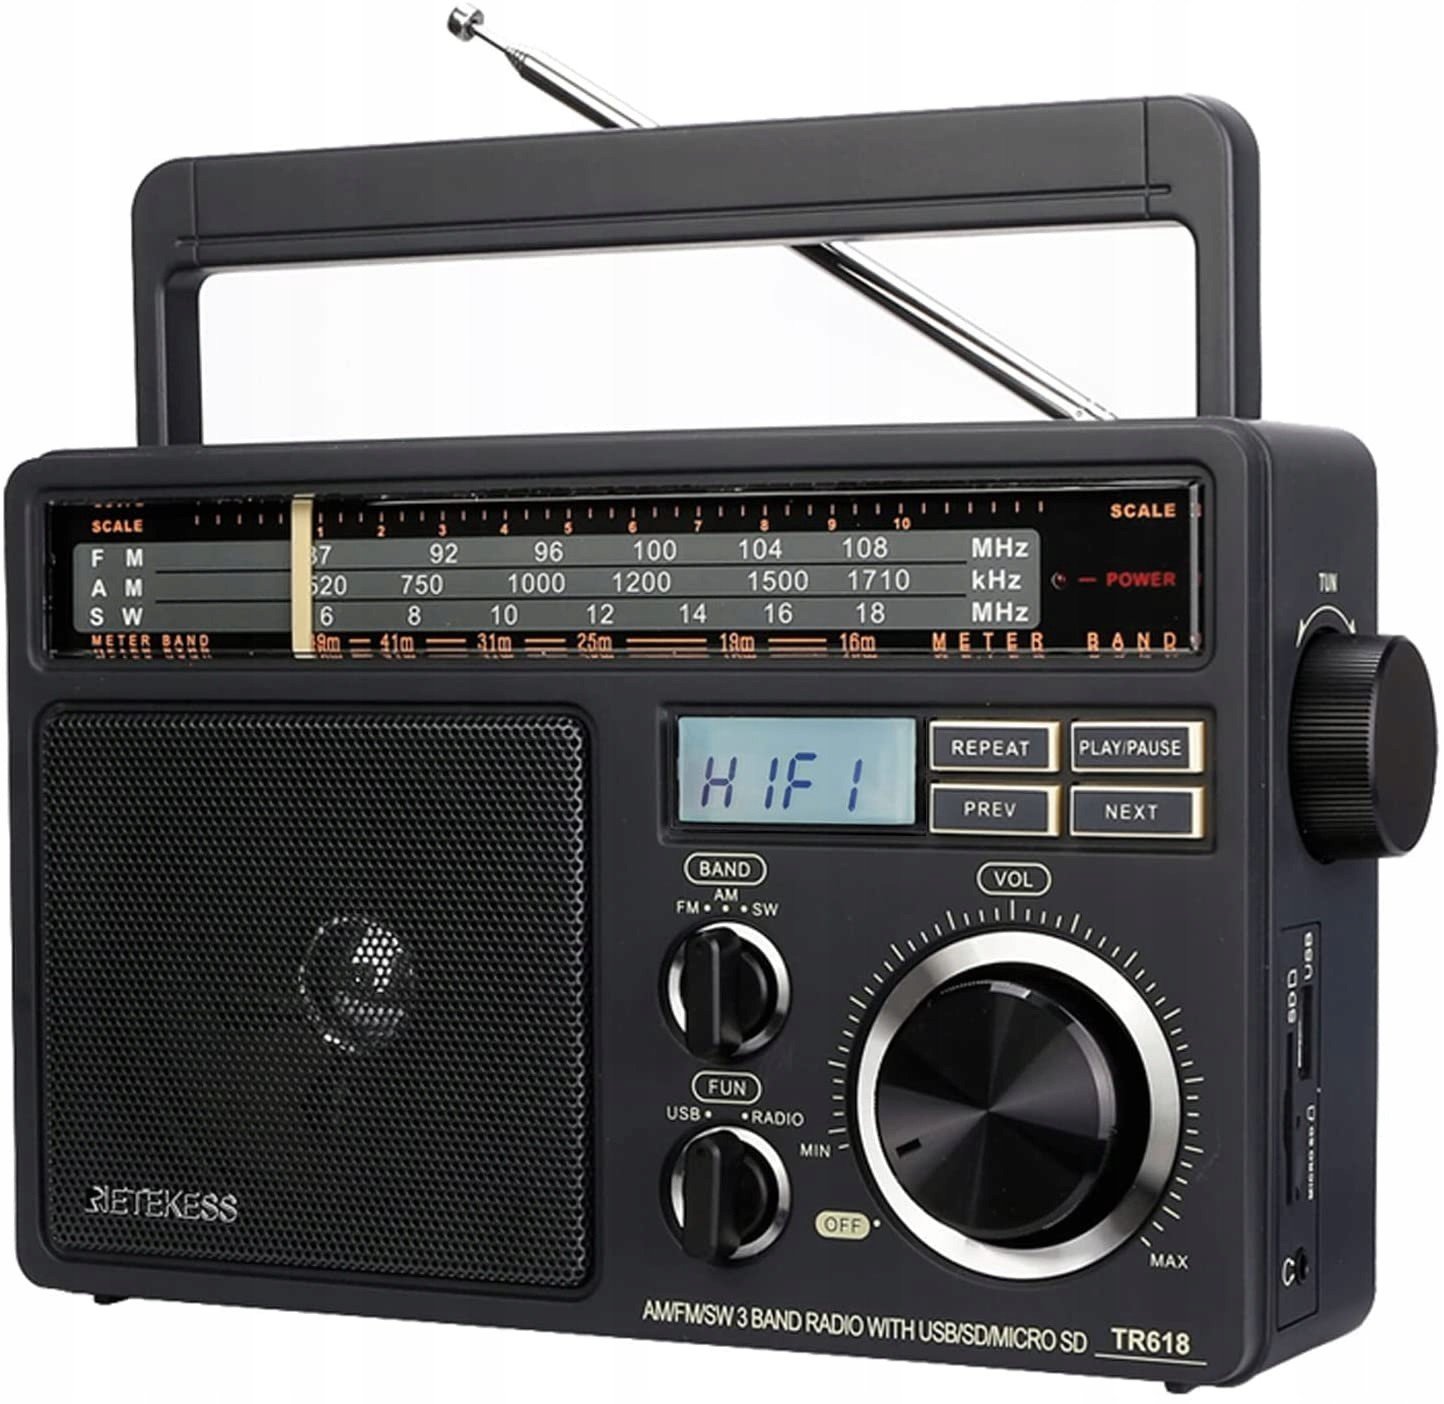 Retekess TR618 Přenosné rádio (Tmavě šedé)